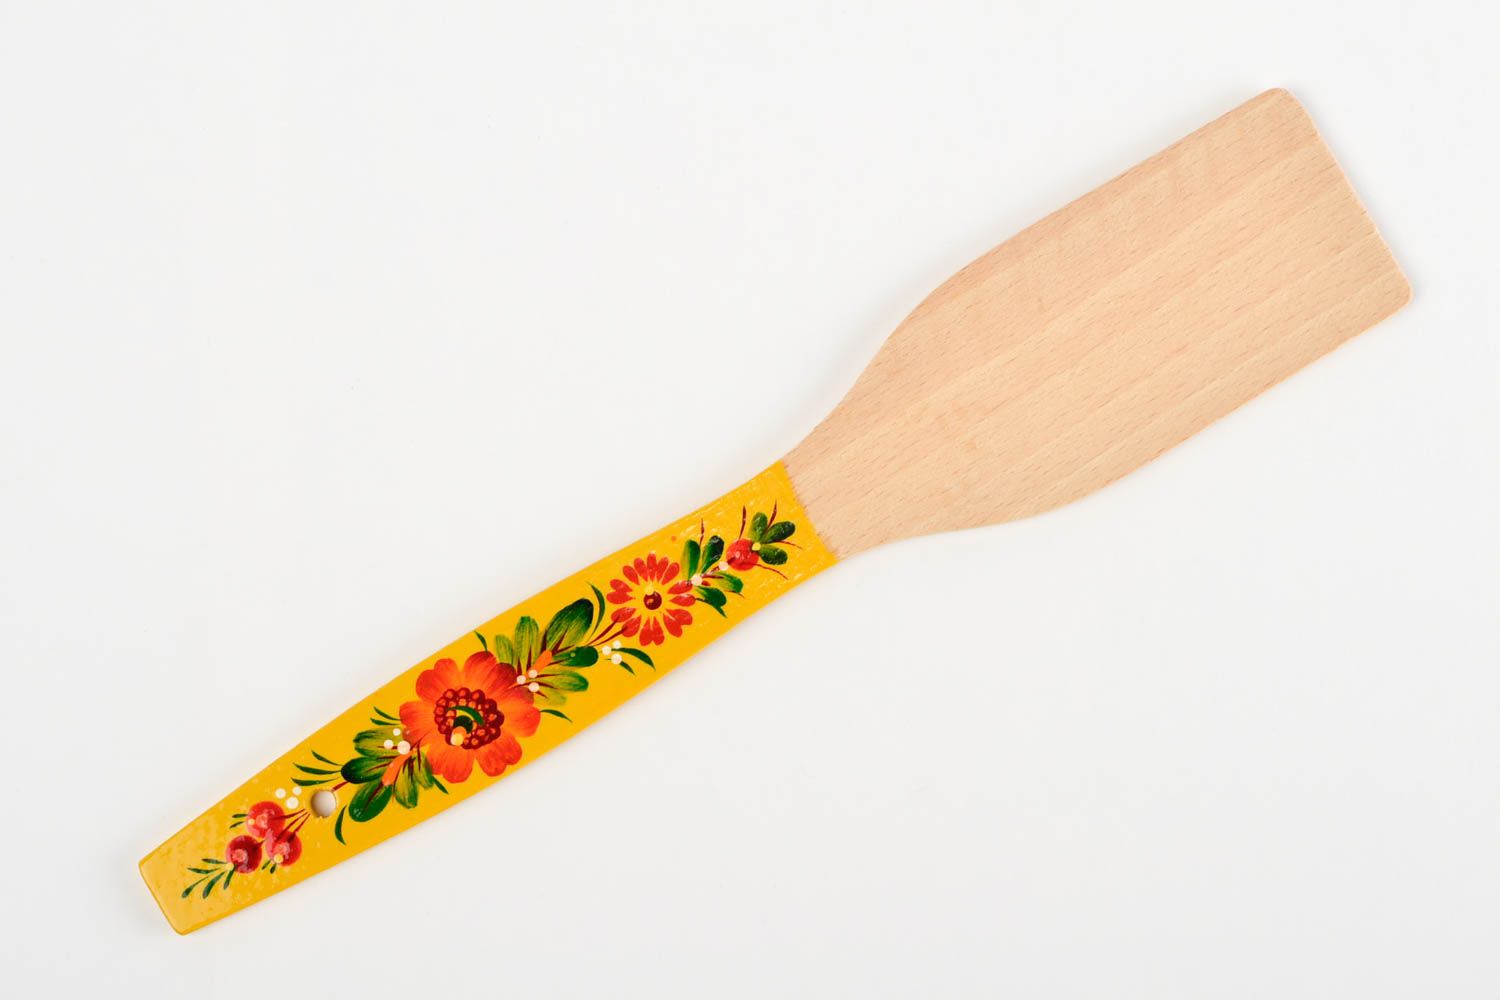 Handmade beautiful spatula stylish wooden utensil painted kitchen accessory photo 3